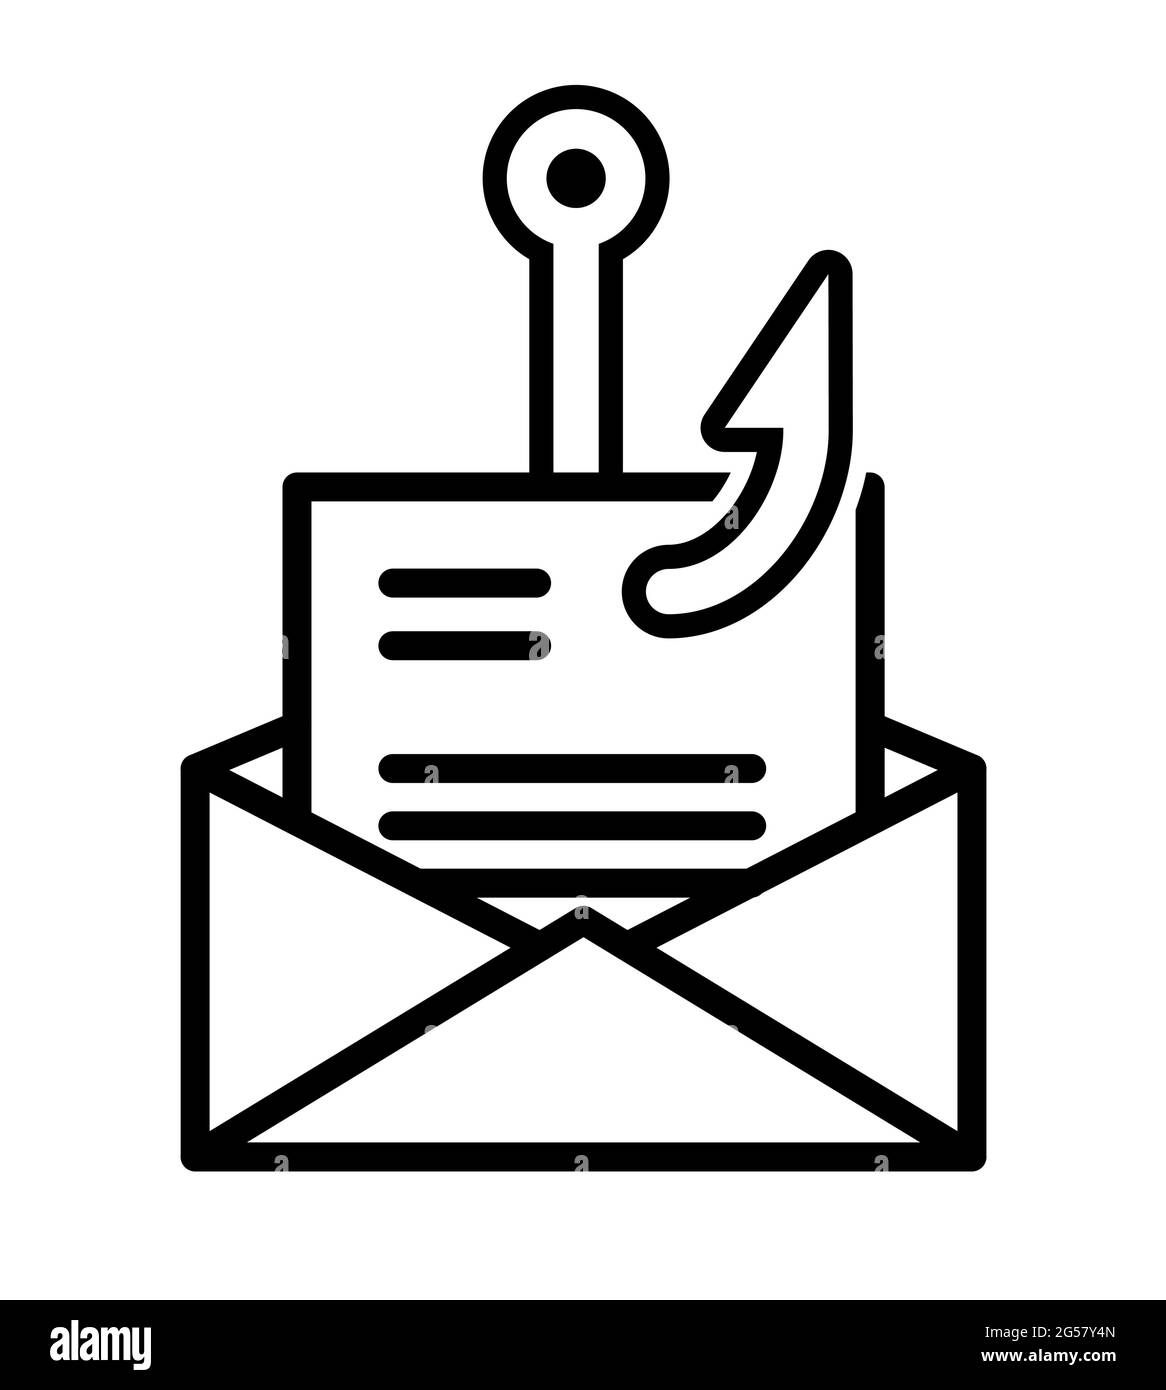 Icona del vettore di simbolo del malware per la posta di phishing Illustrazione Vettoriale